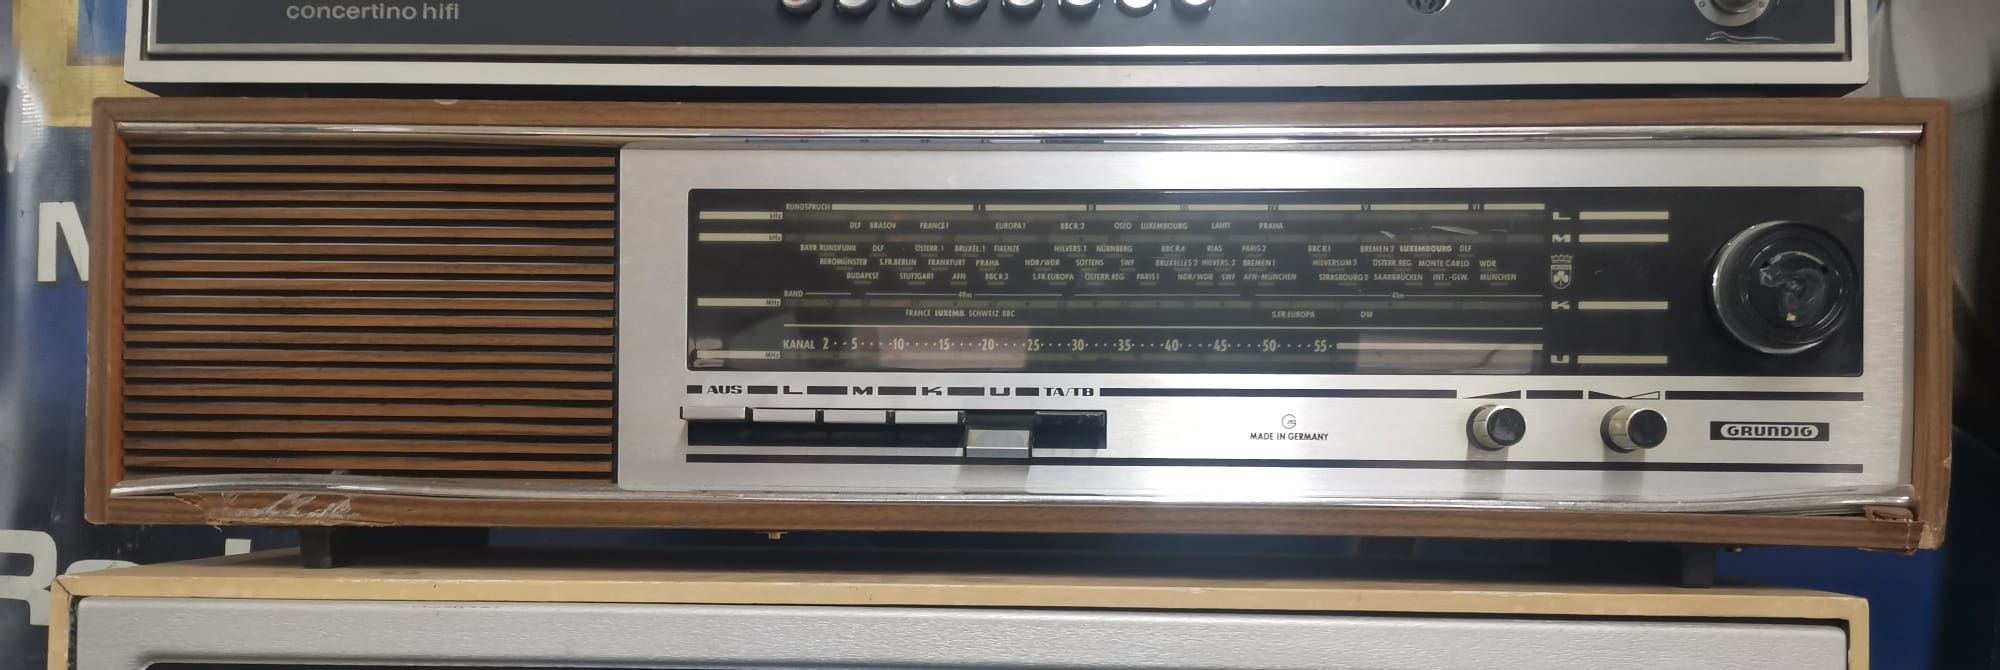 Vind aparate de radio vintage